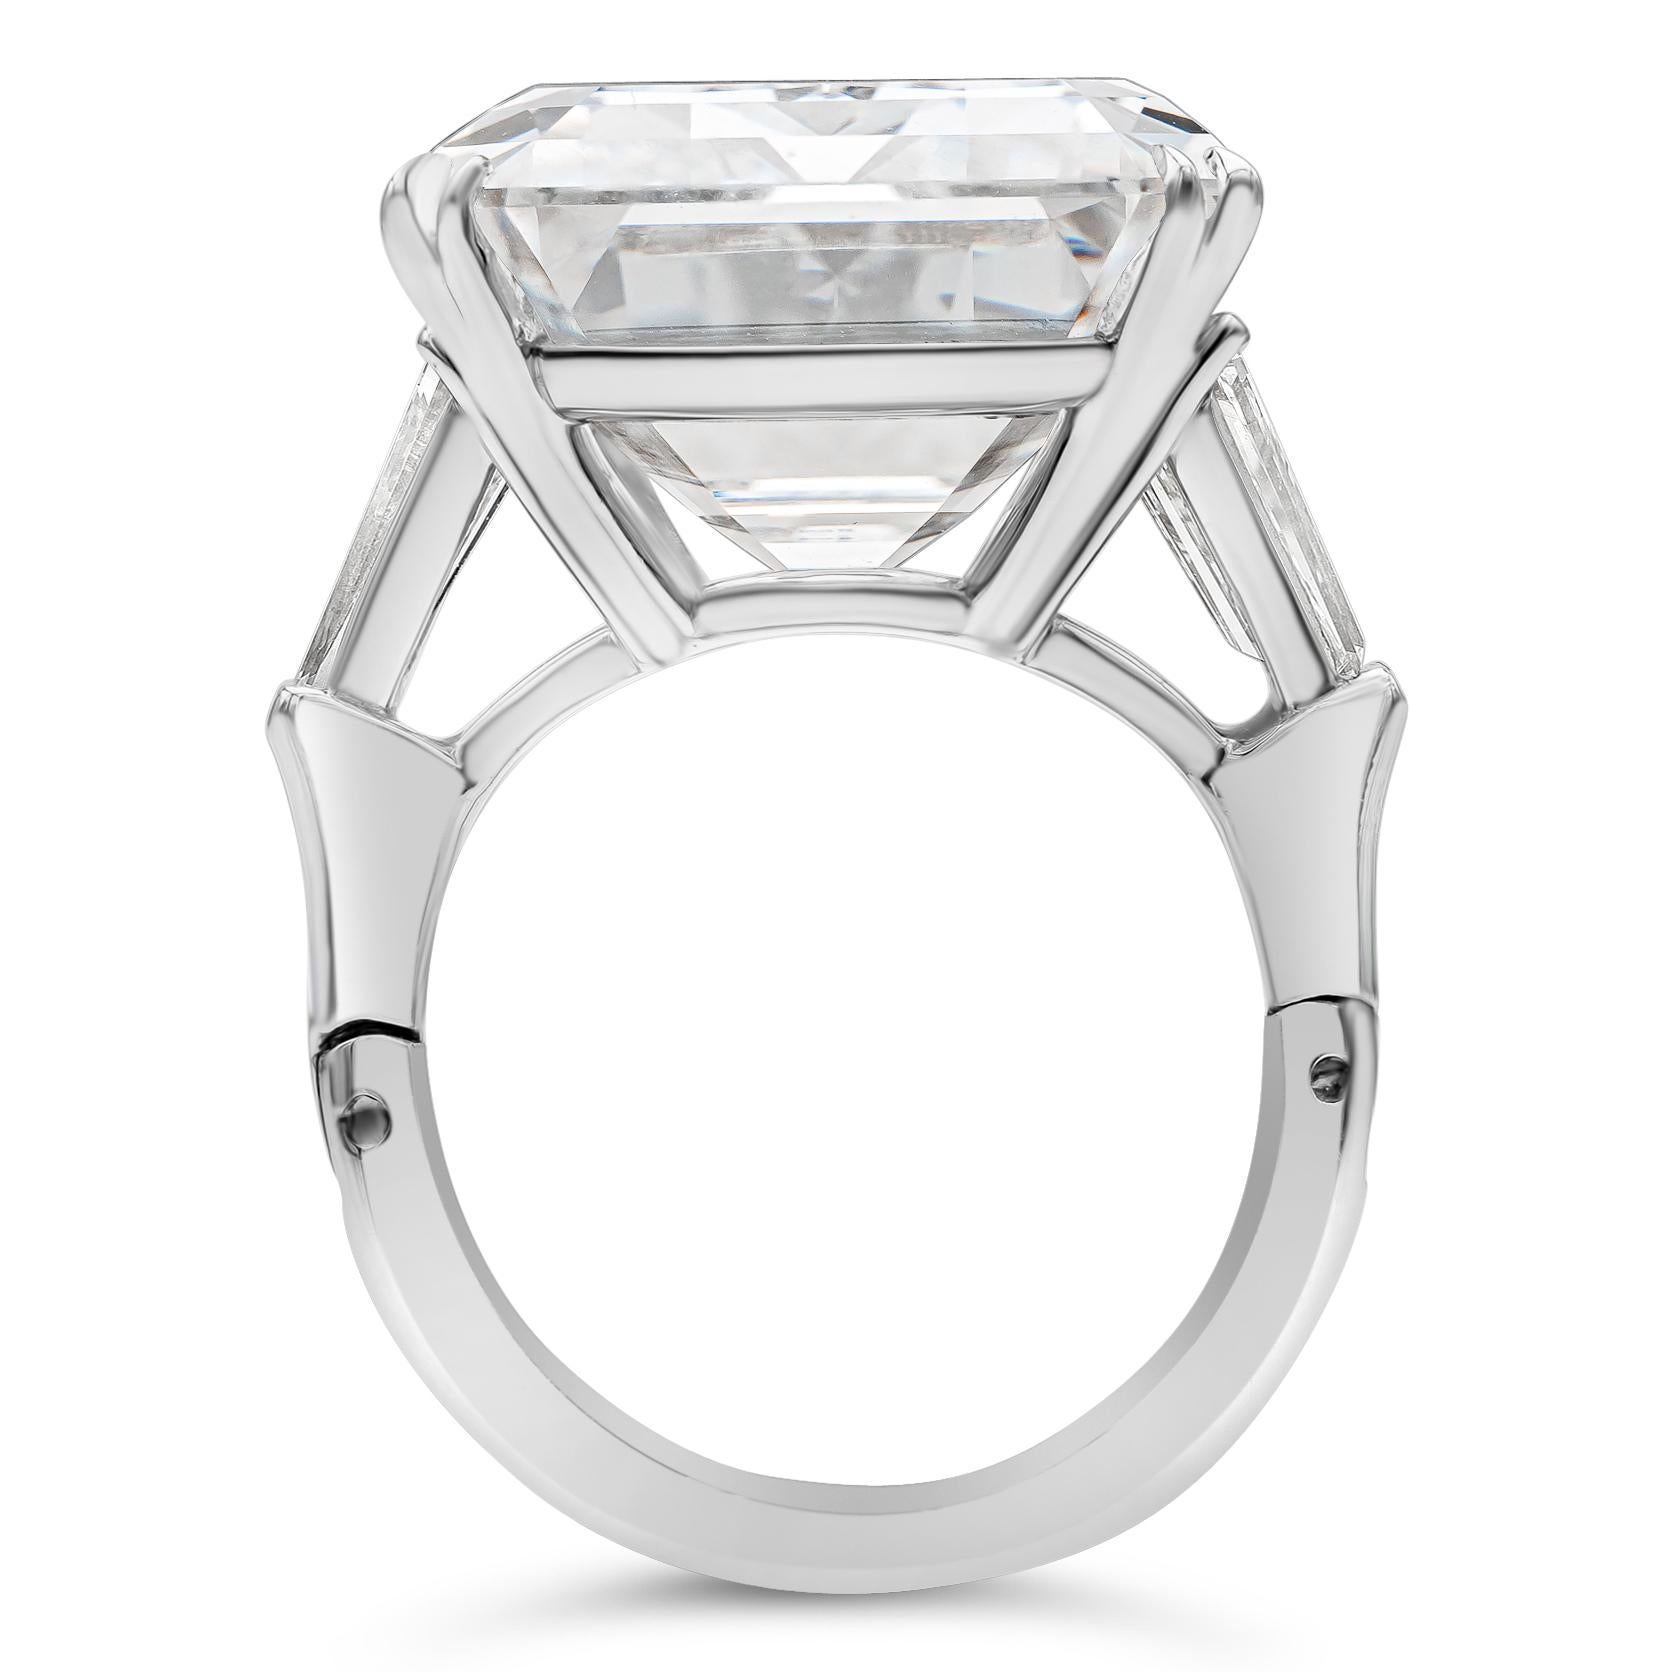 25 carat engagement ring